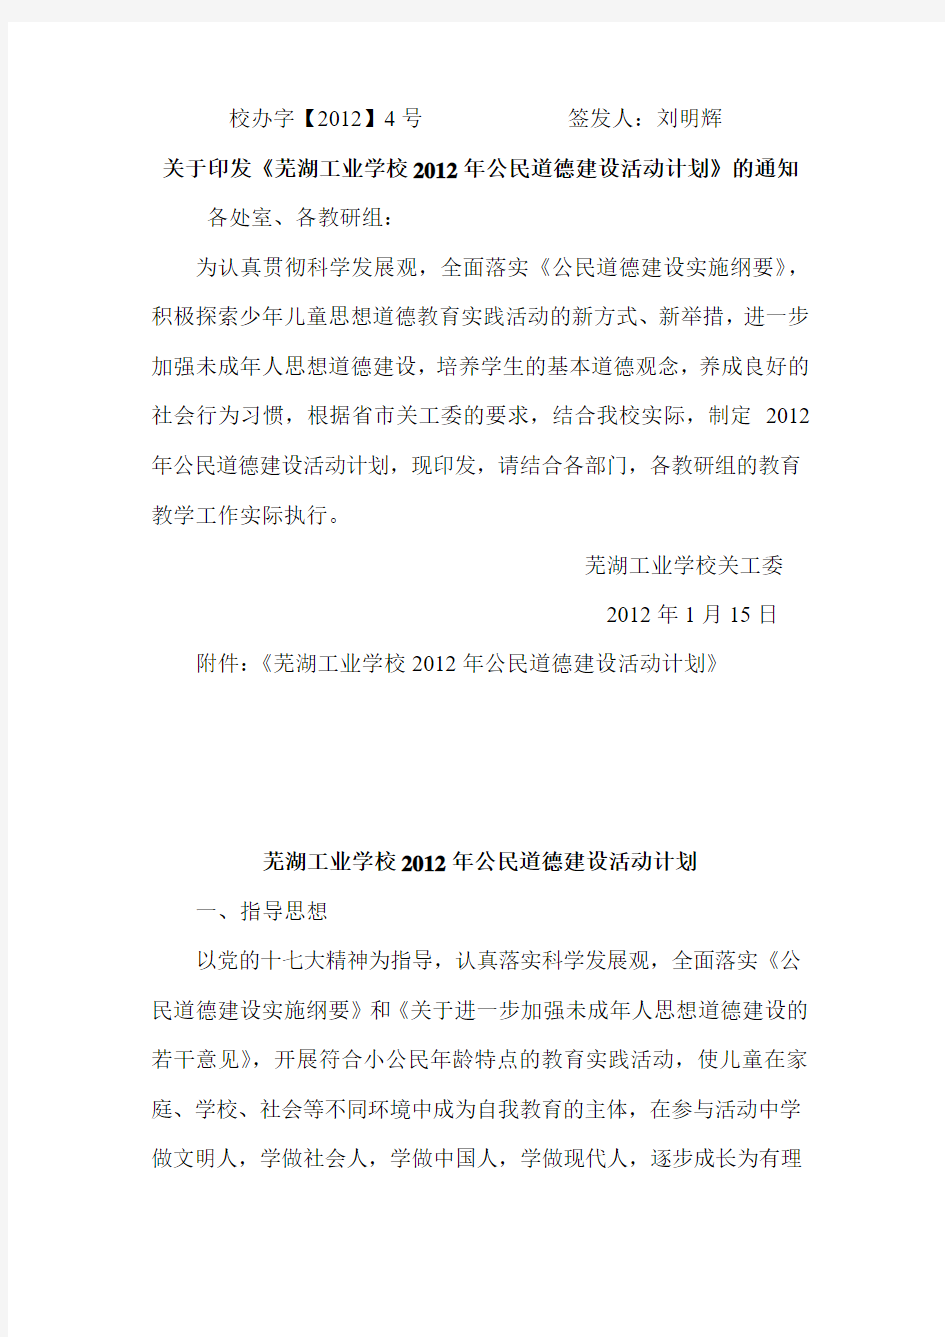 芜湖工业学校公民道德建设活动实施方案